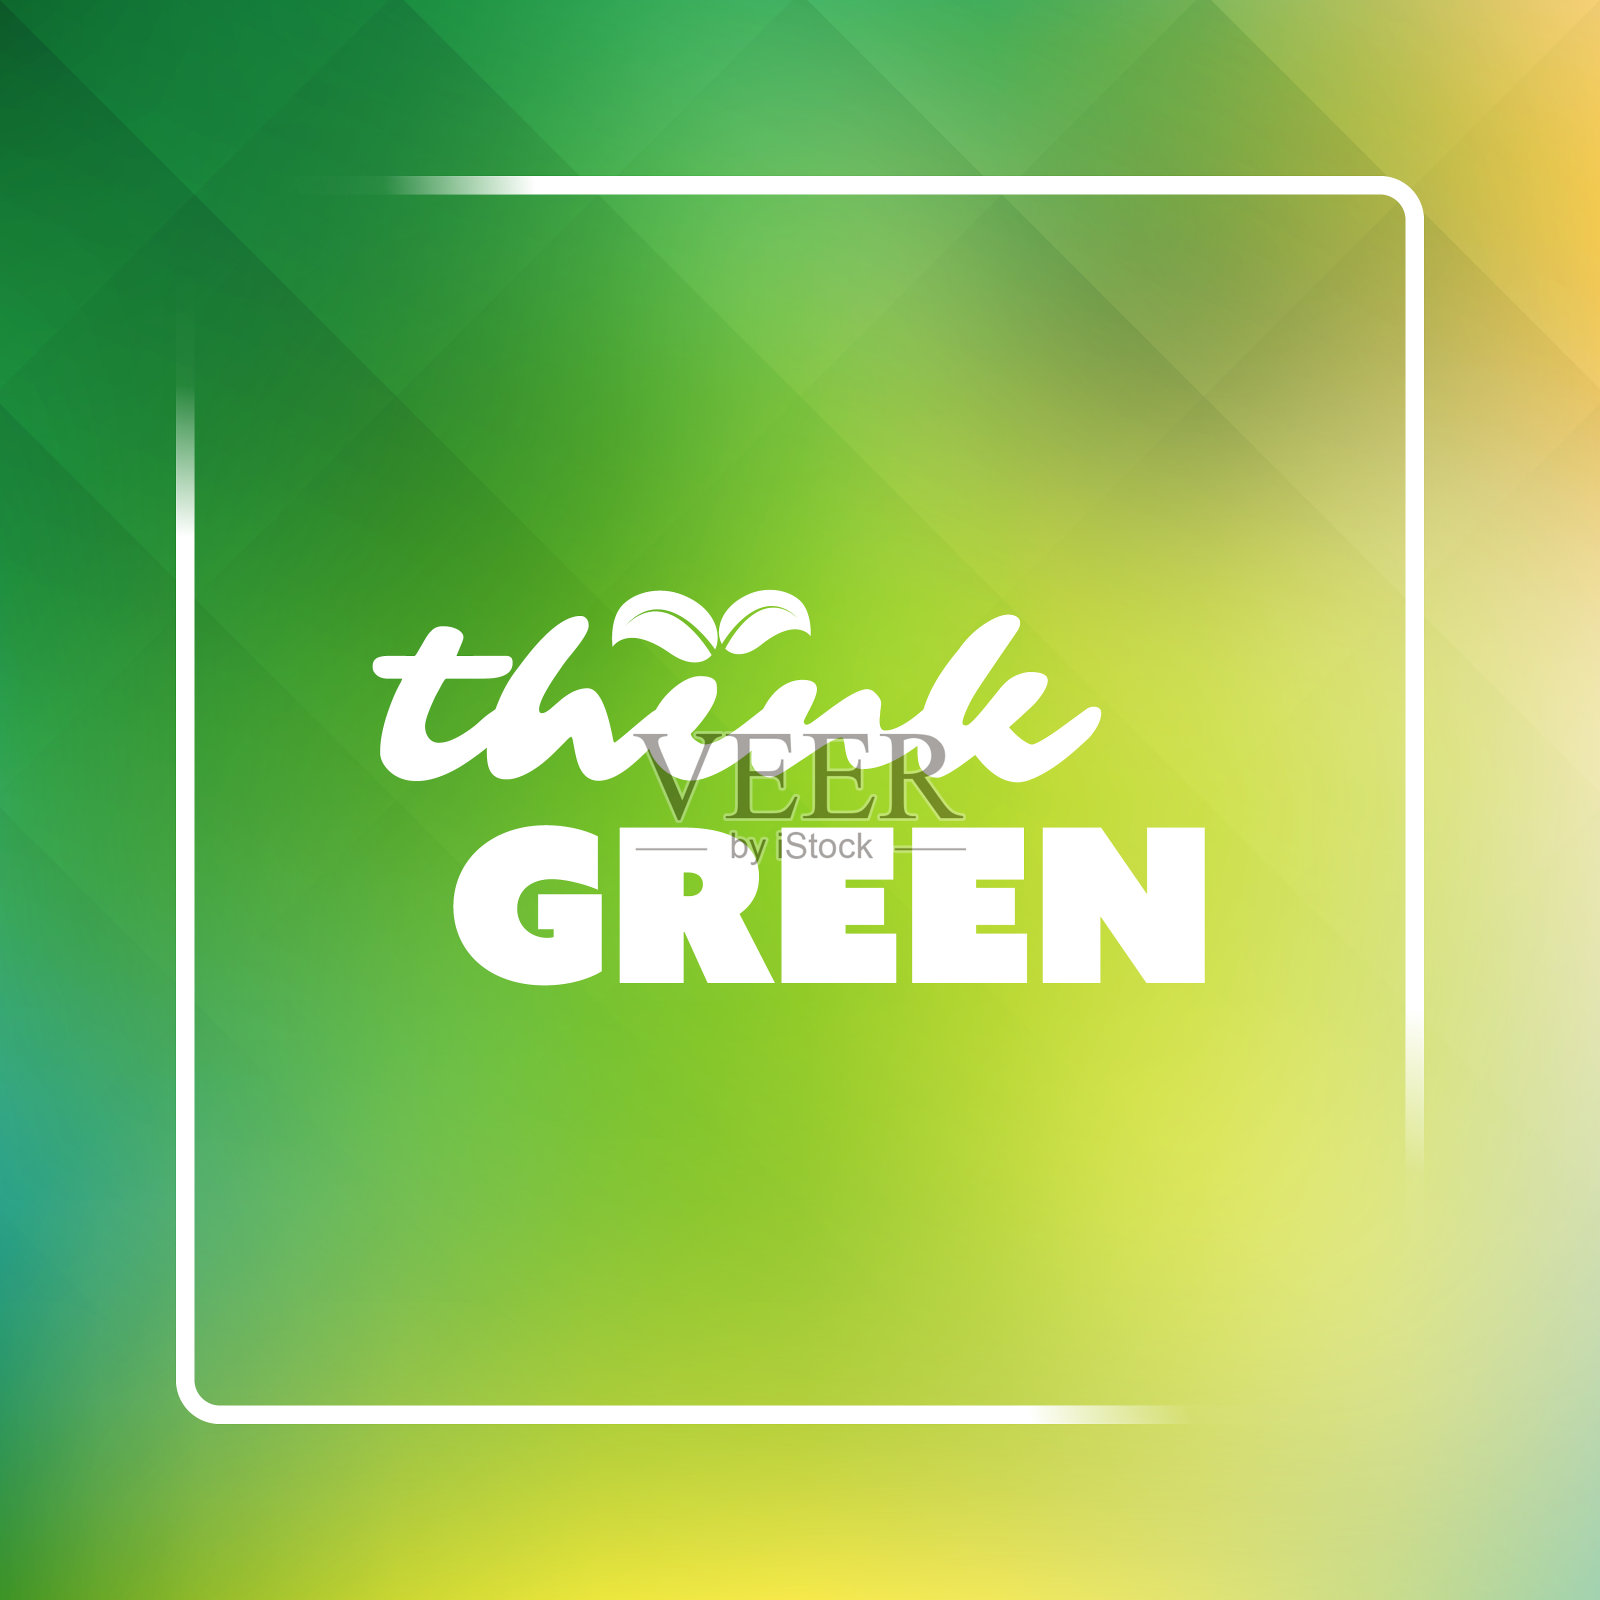 思考绿色生态设计模板插画图片素材